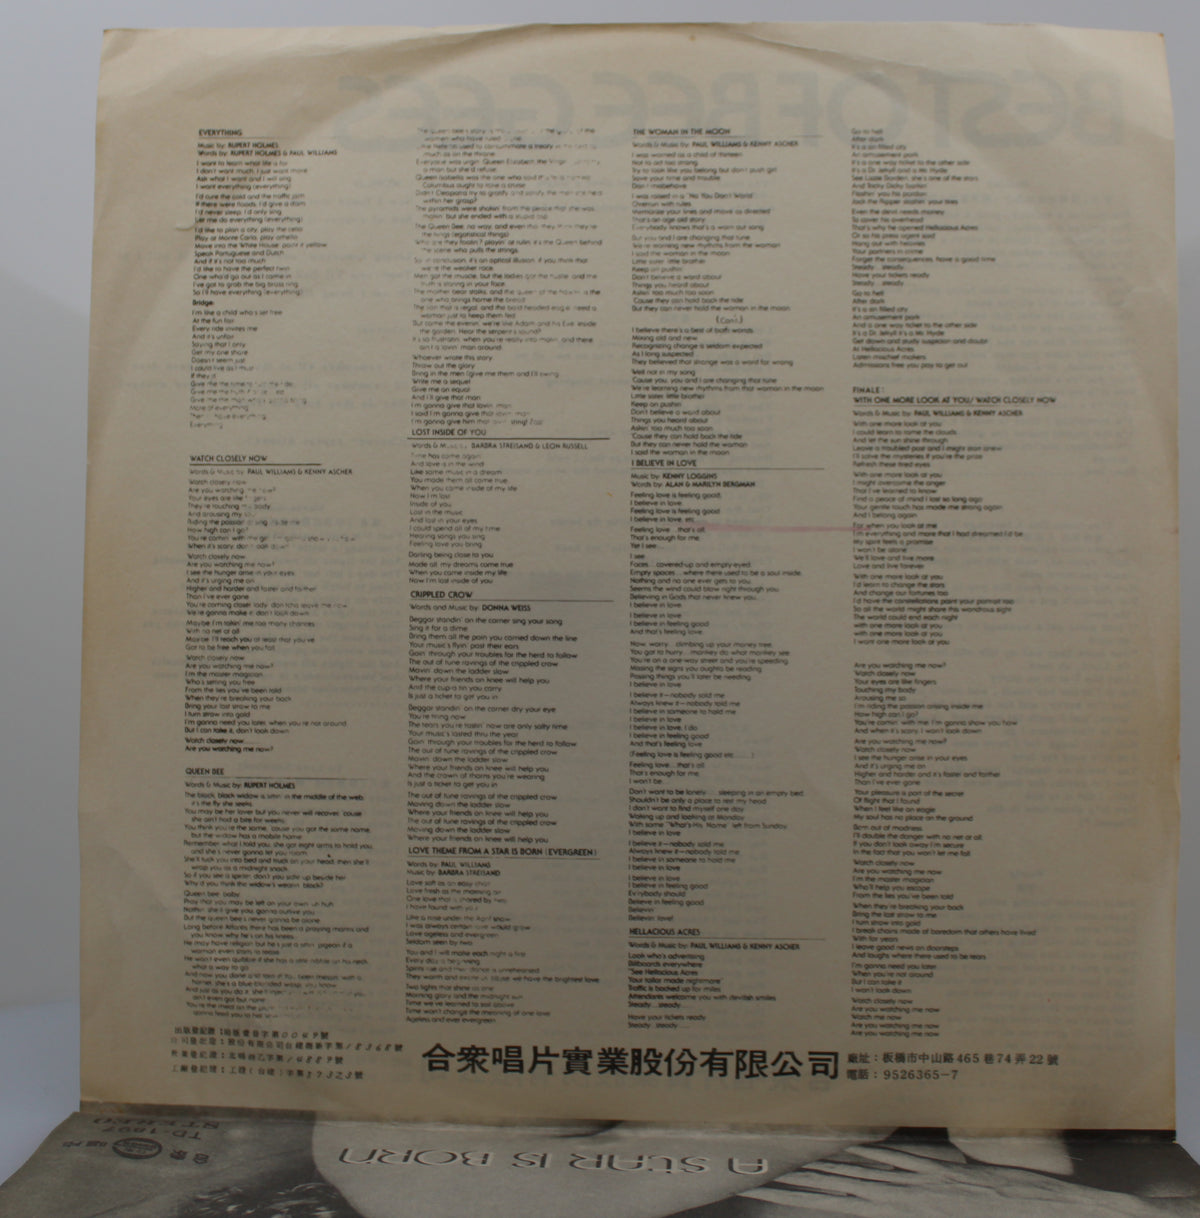 Bee Gees - Best Of, Vinyl LP, 33⅓ rpm, Taiwan